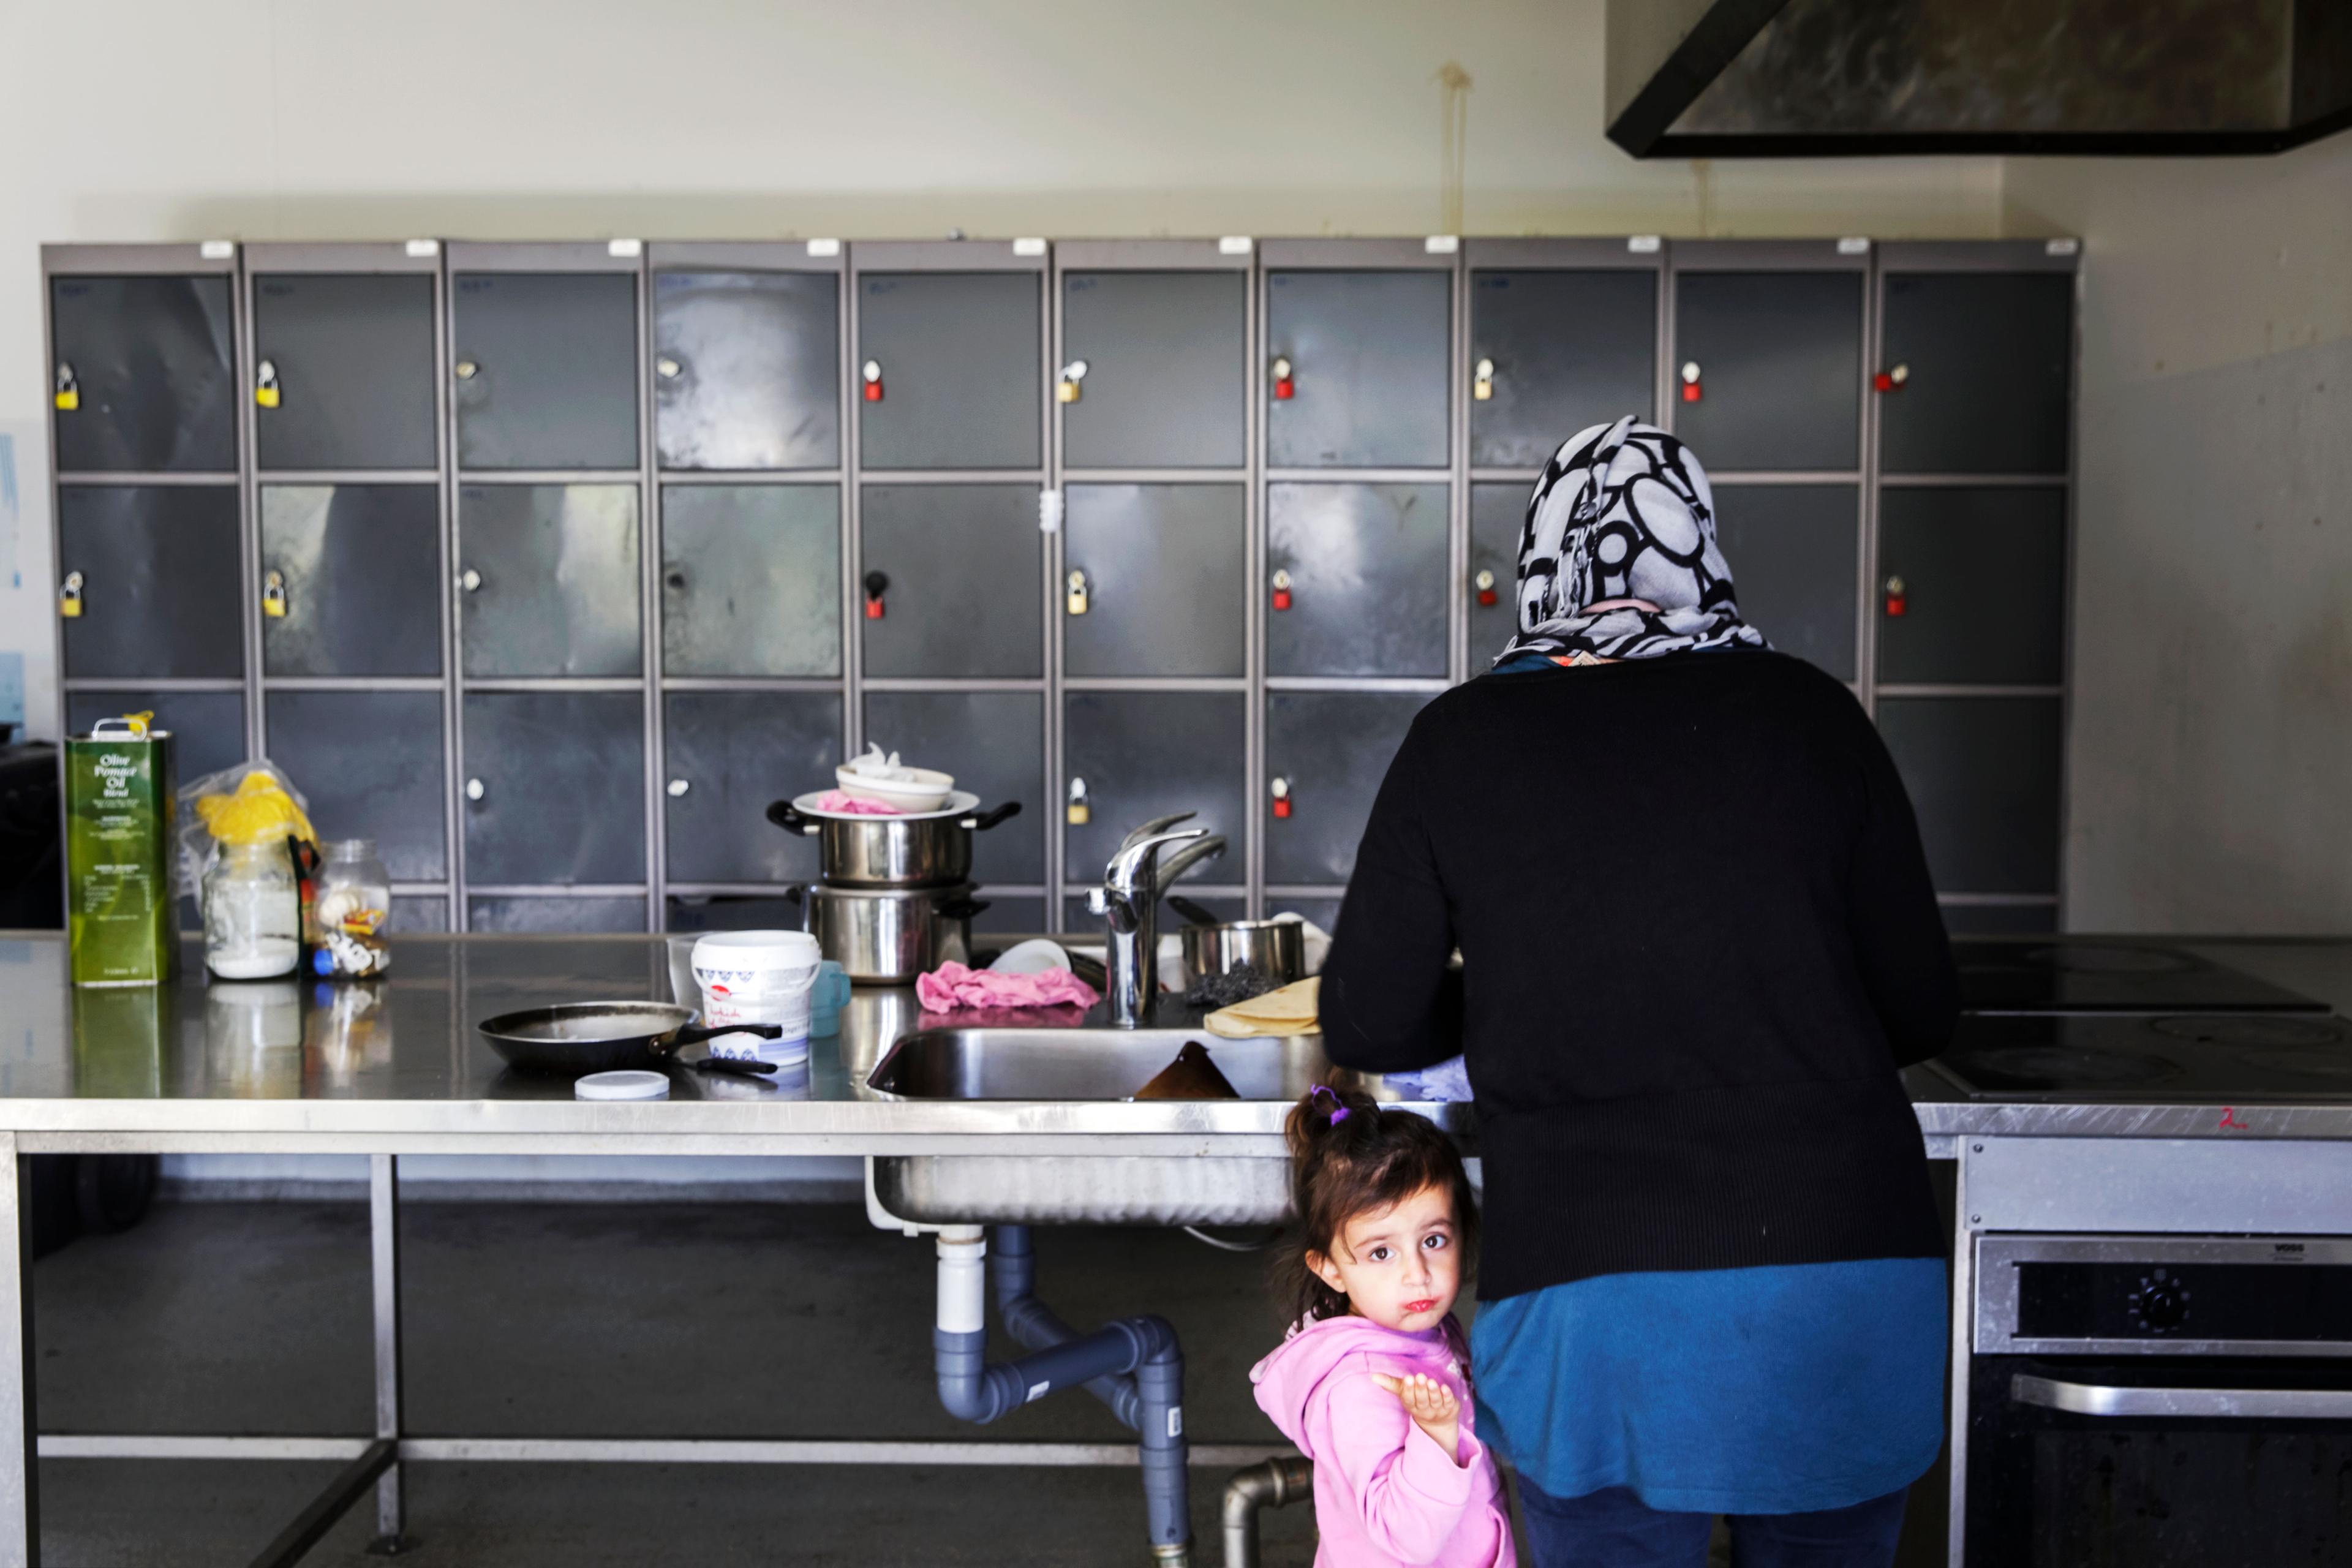 Dagene er trivielle og frustrerende for de flygtninge på asylcentrene, som hverken er i arbejde eller praktikforløb. De oplever det som kun at spise og sove. 
Foto: Mads Nissen / Polfoto